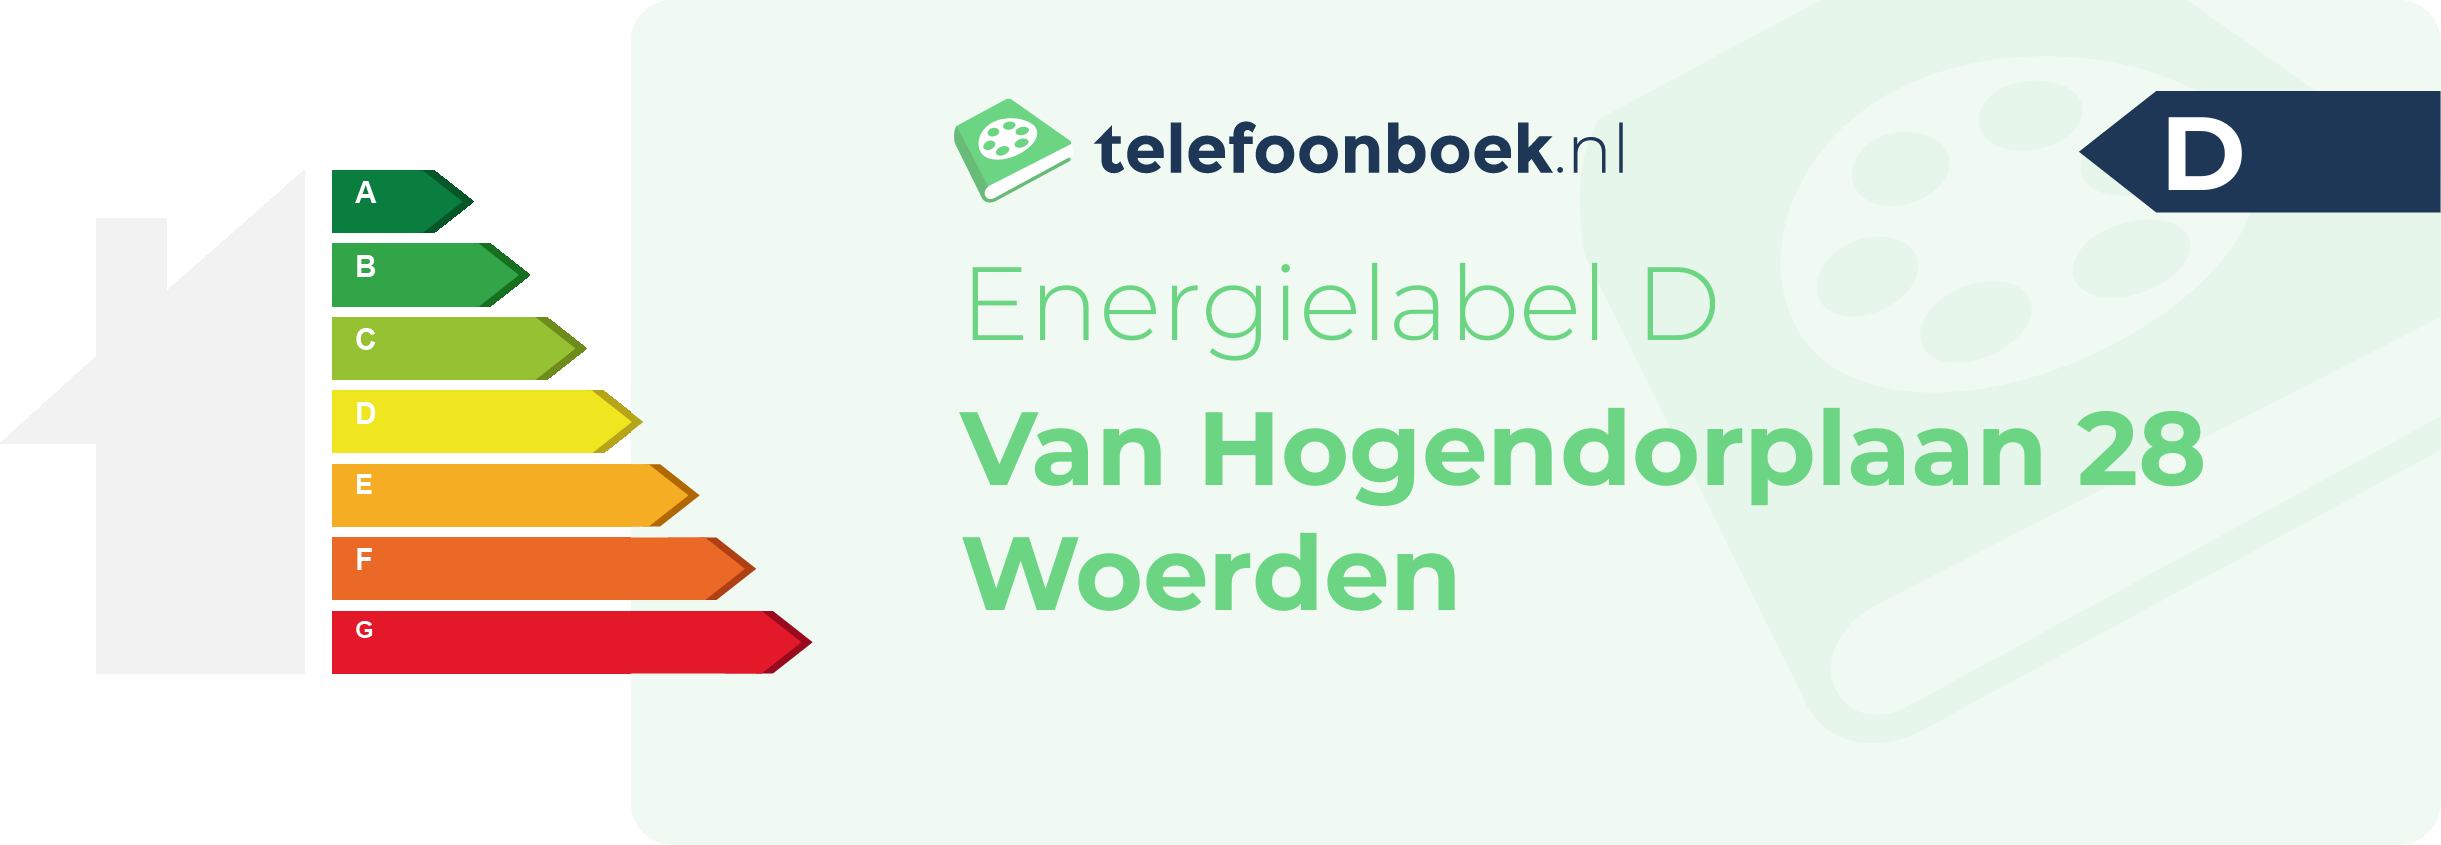 Energielabel Van Hogendorplaan 28 Woerden